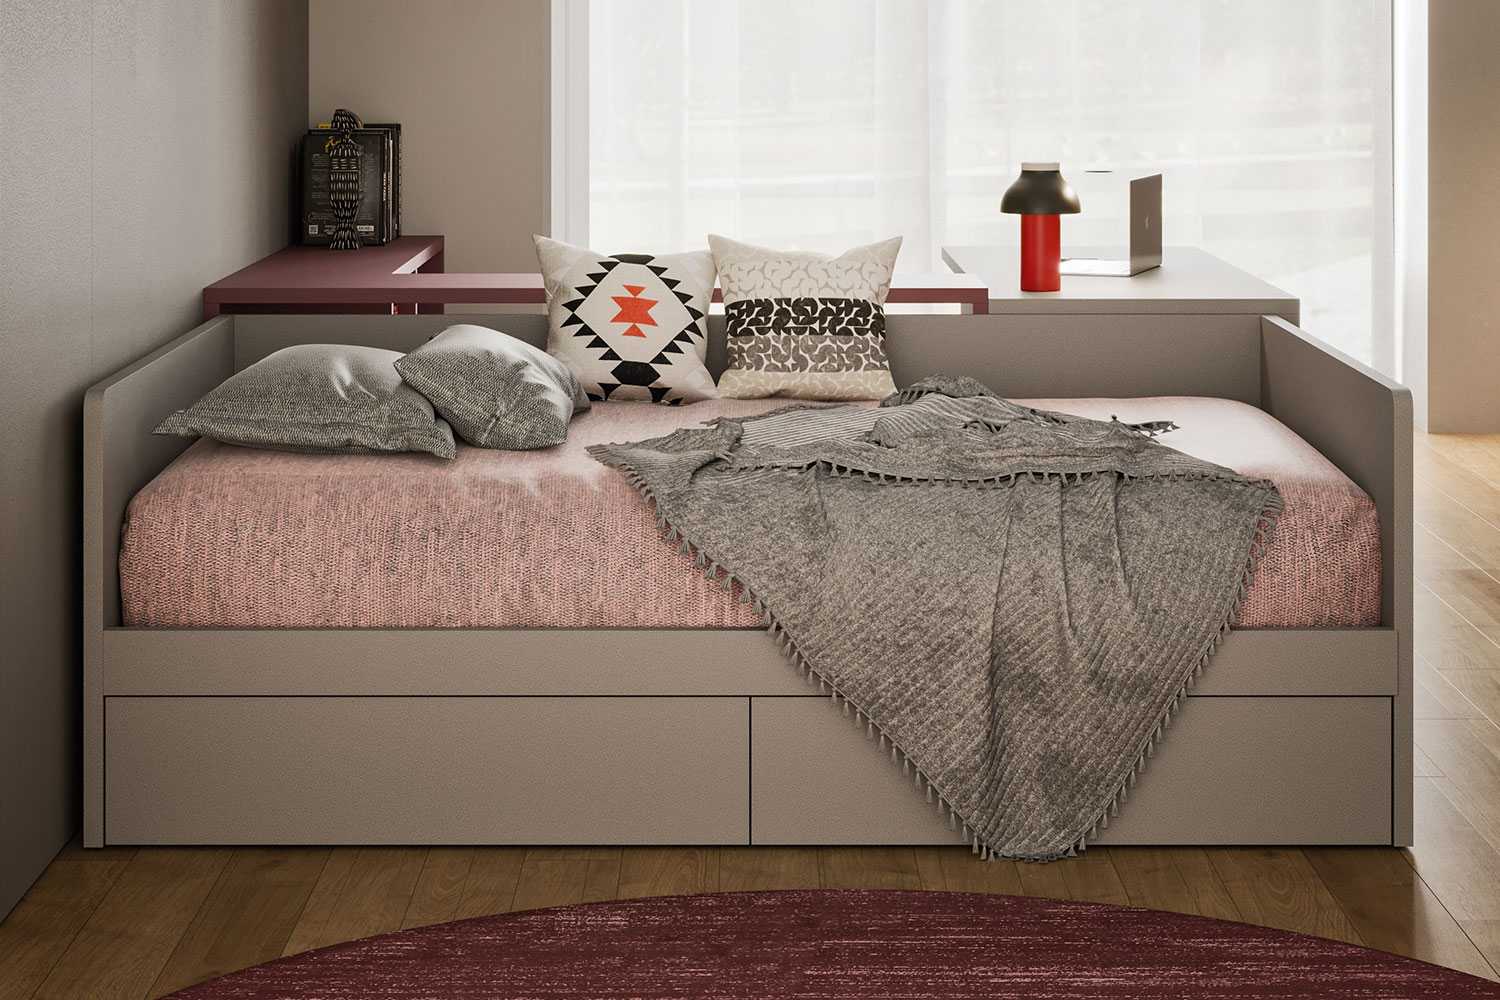 Il divano letto Apollo può essere scelto in due finiture e colori